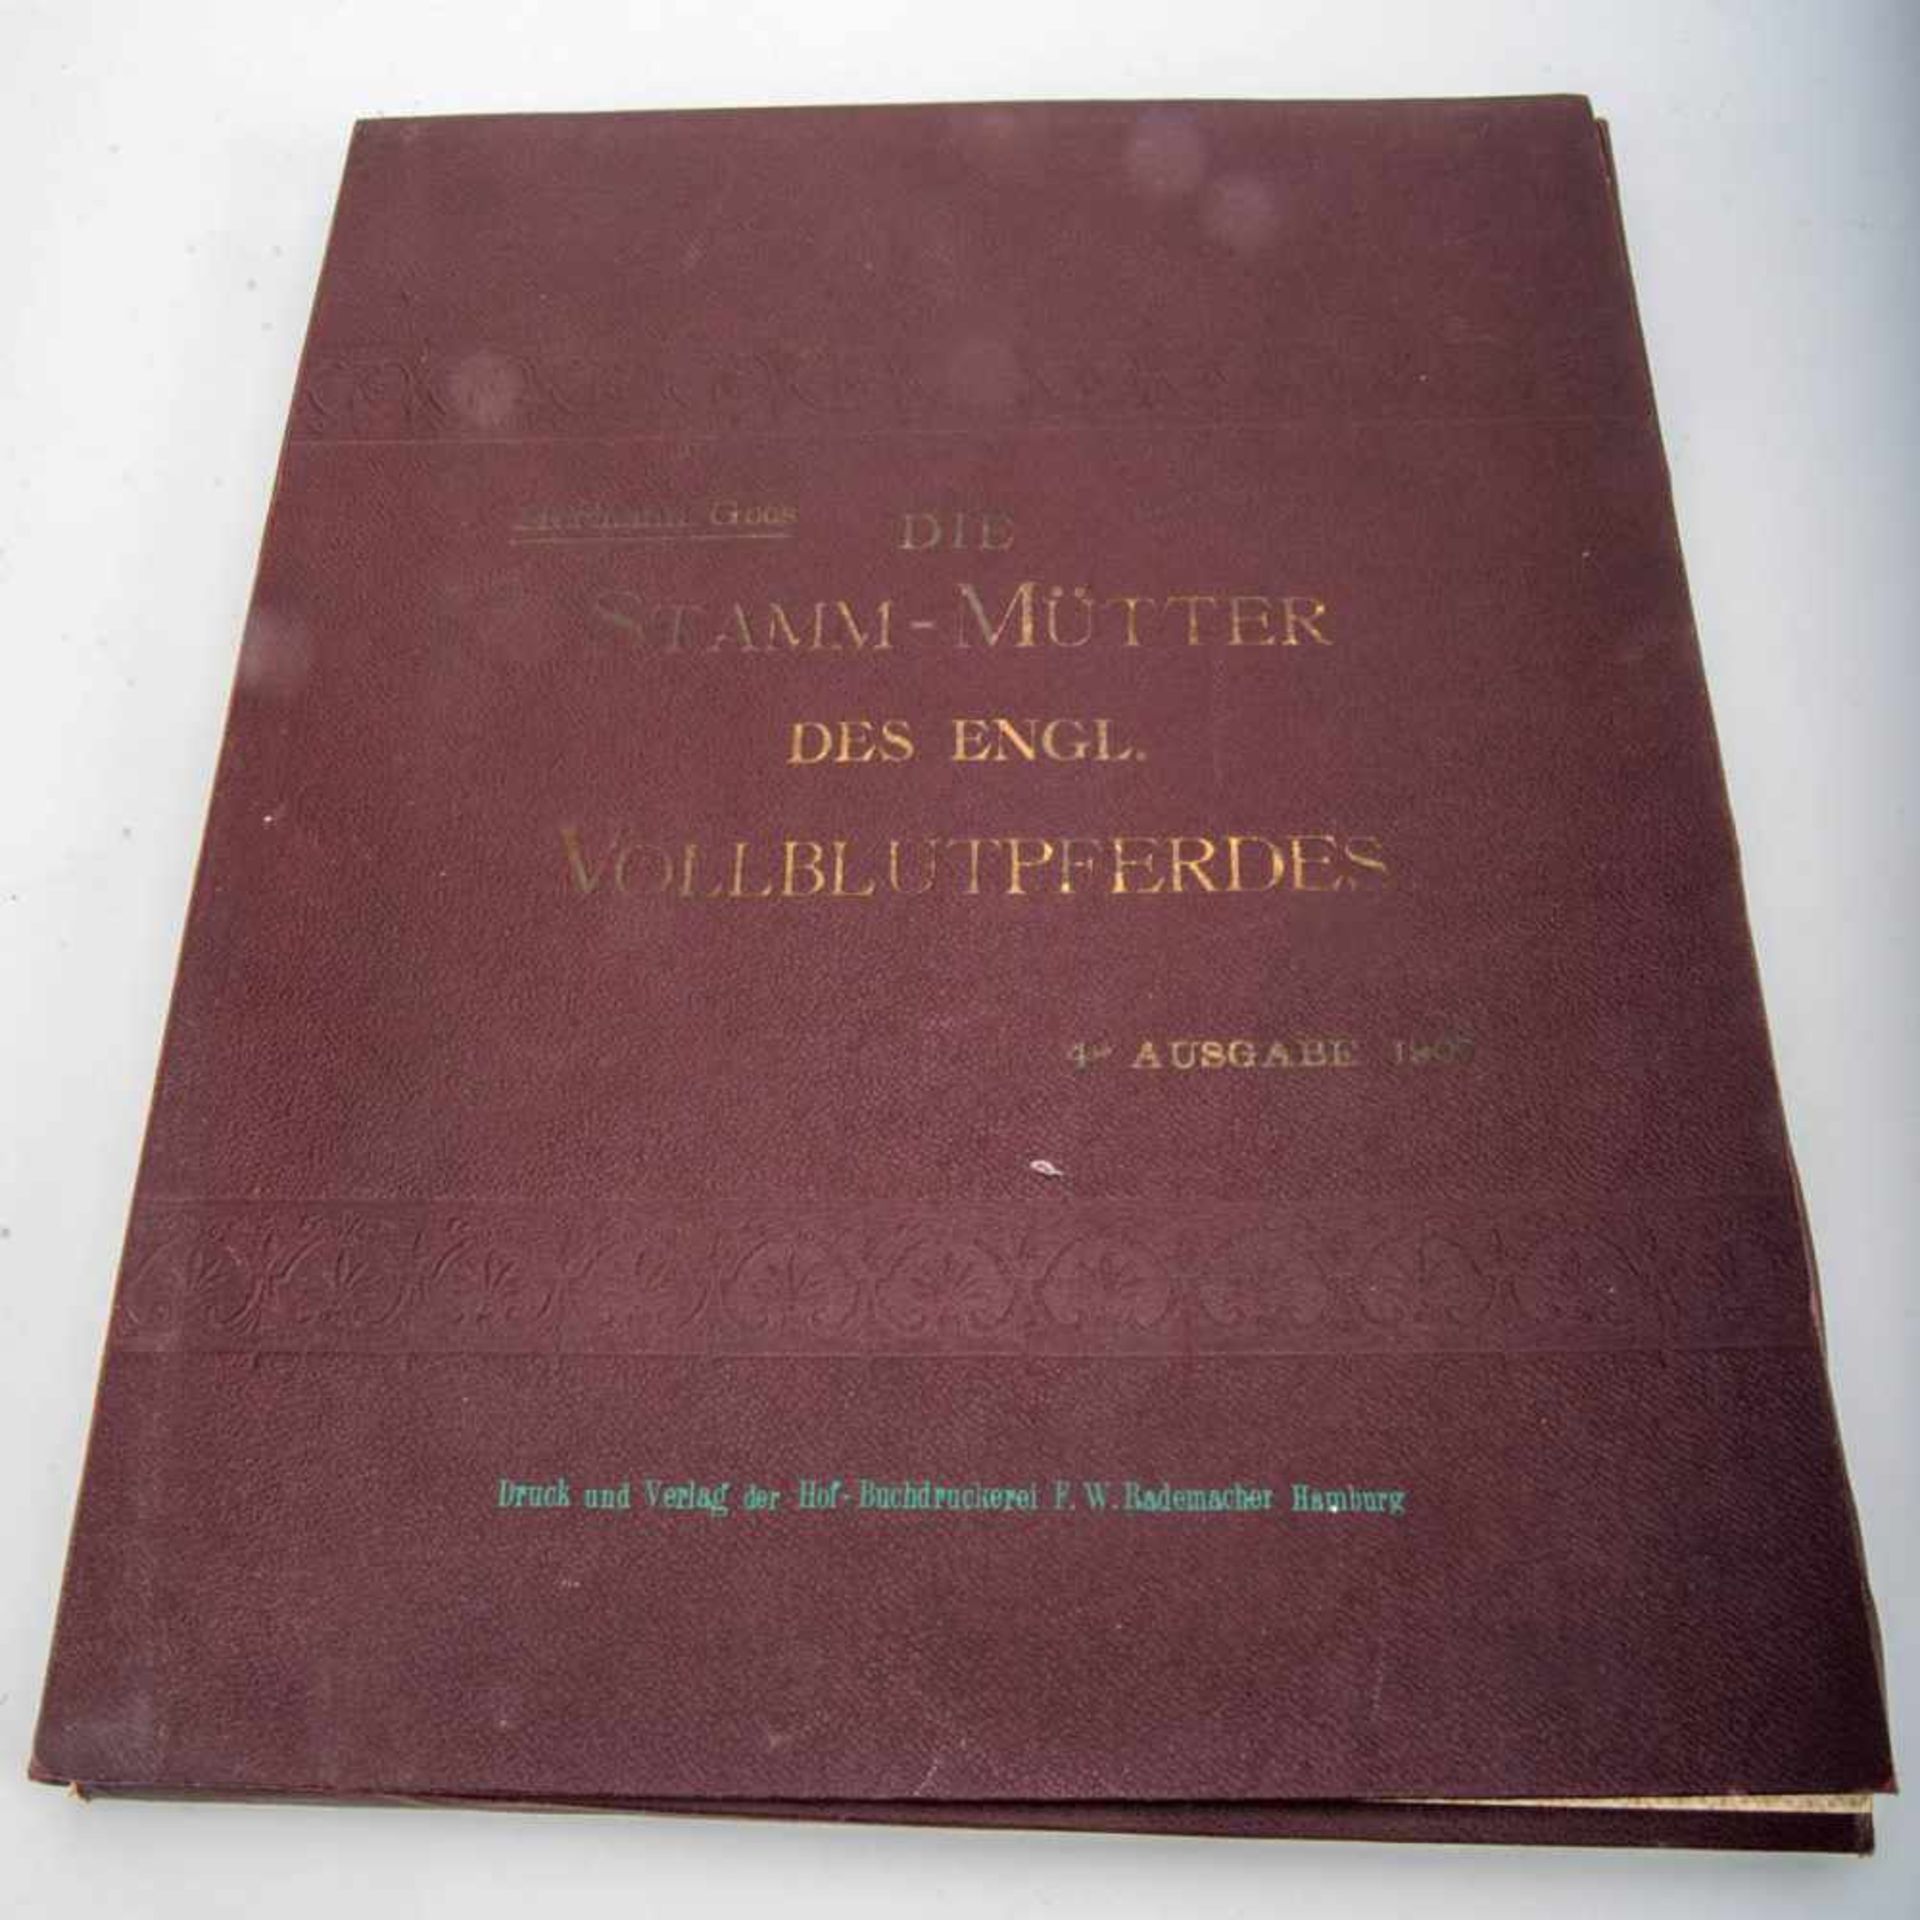 Die Stamm-Mütter des engl. Vollblutpferdes von Hermann Goos, 4. Ausgabe 1907. Druck und Verlag der